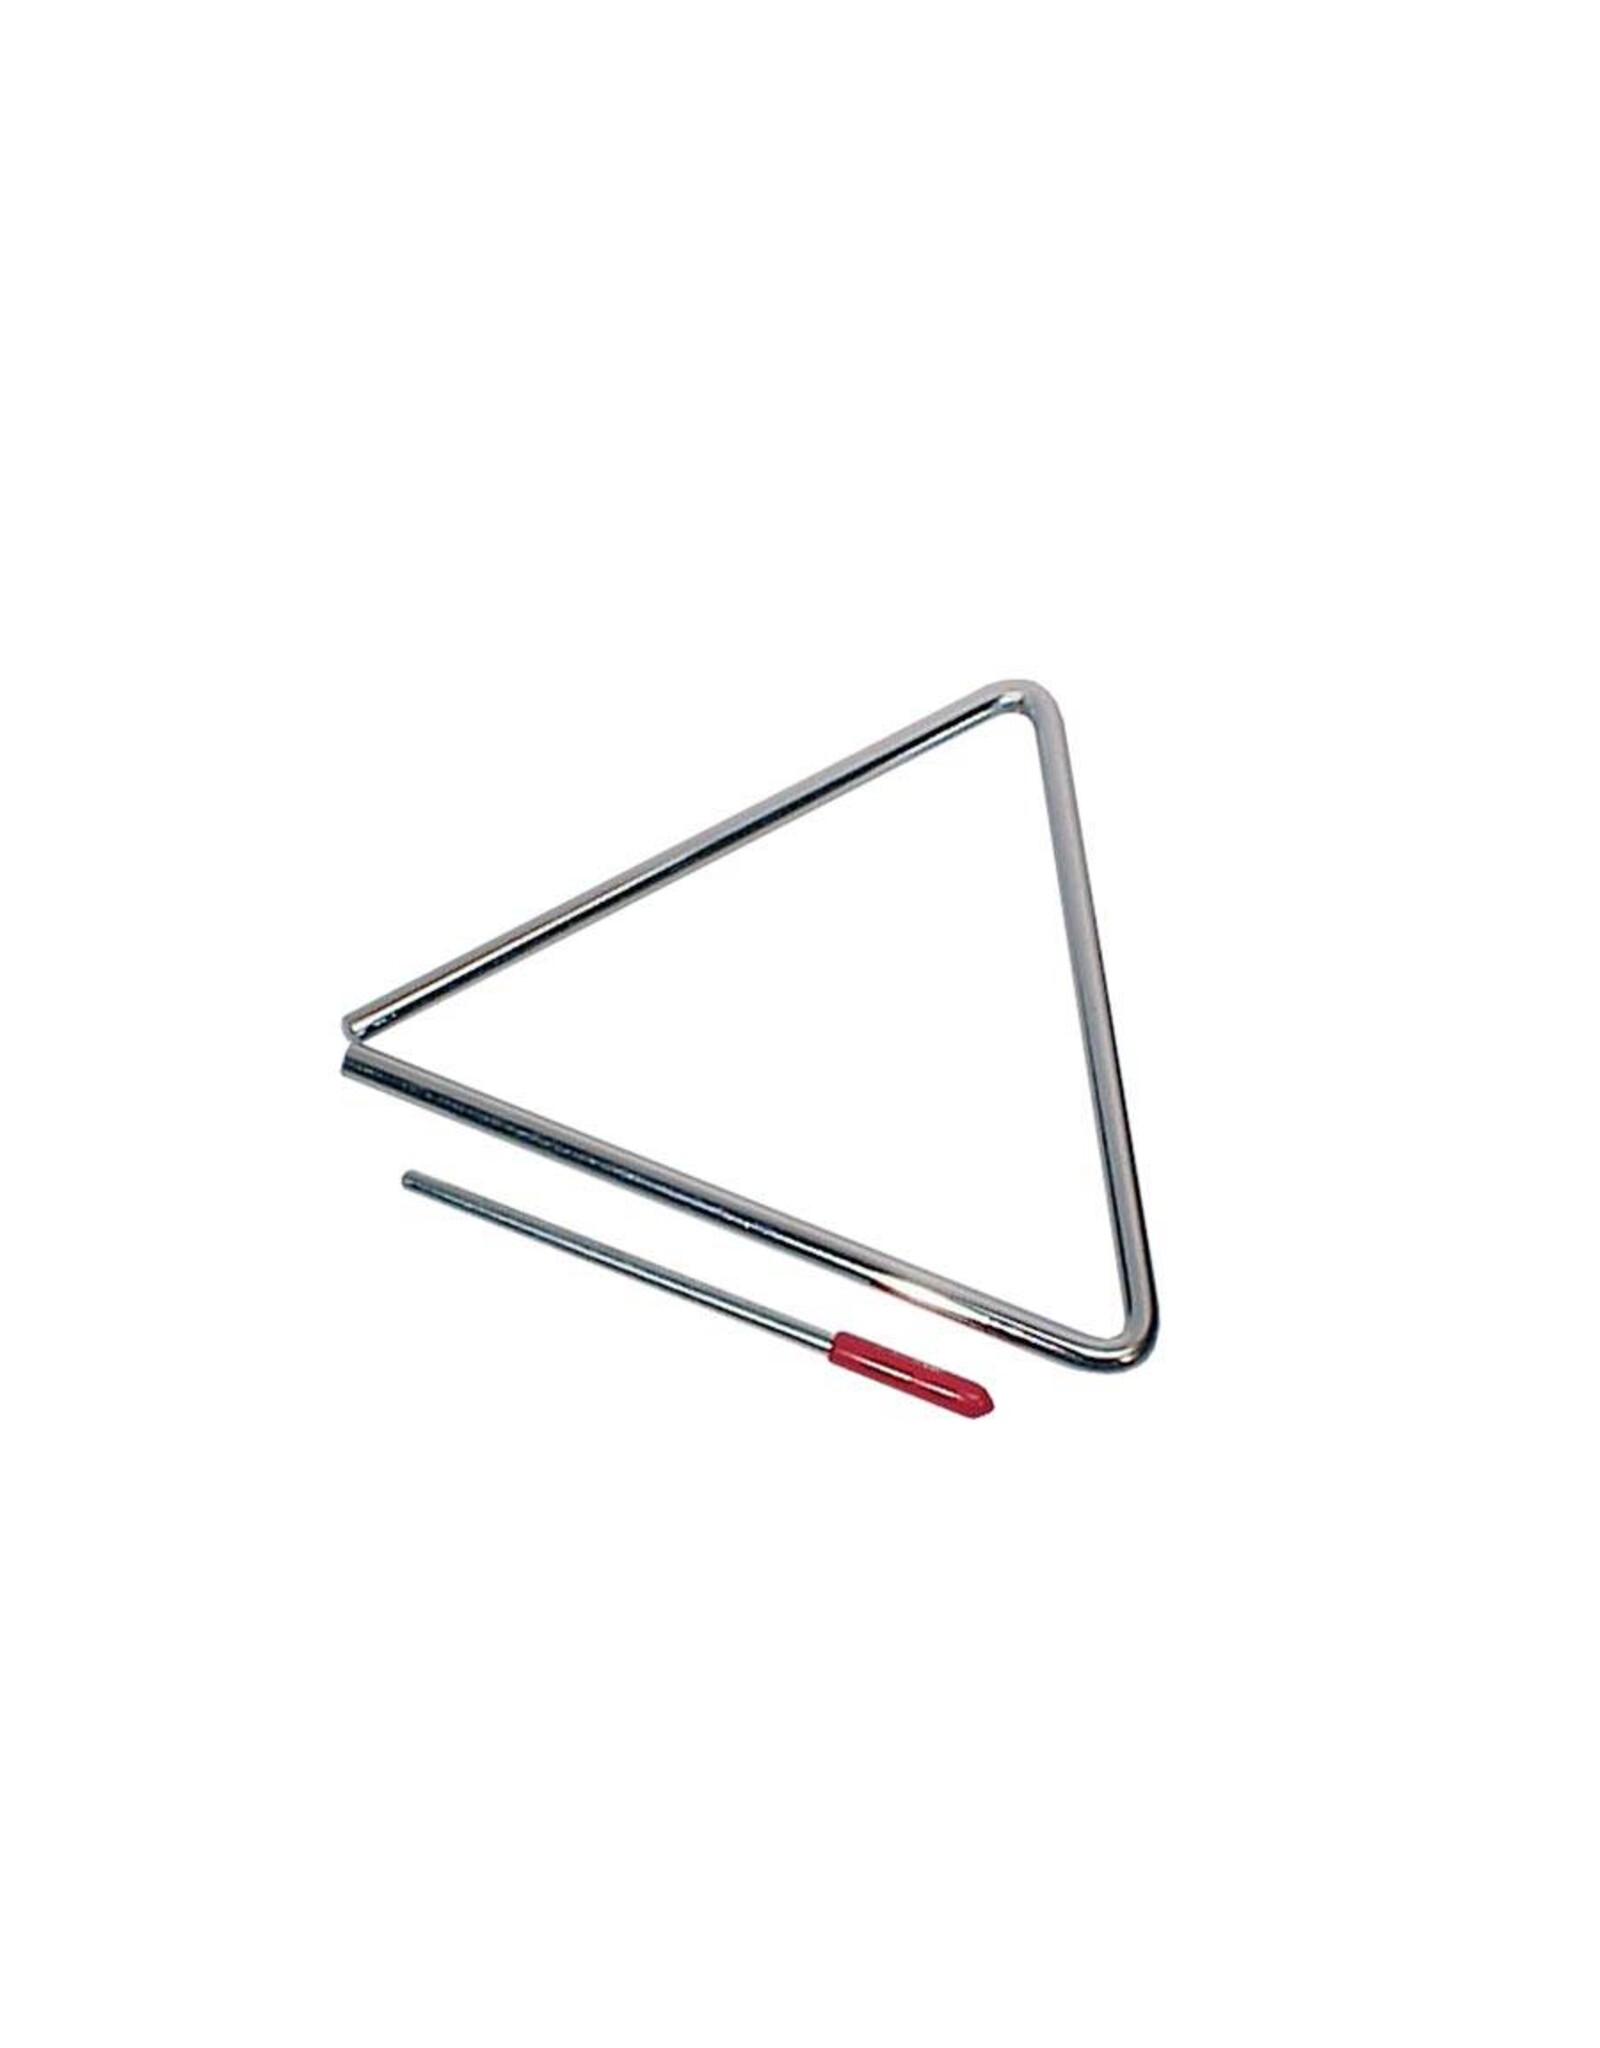 B-Percu B Percu Triangle 7 "incl. Bar TRI7